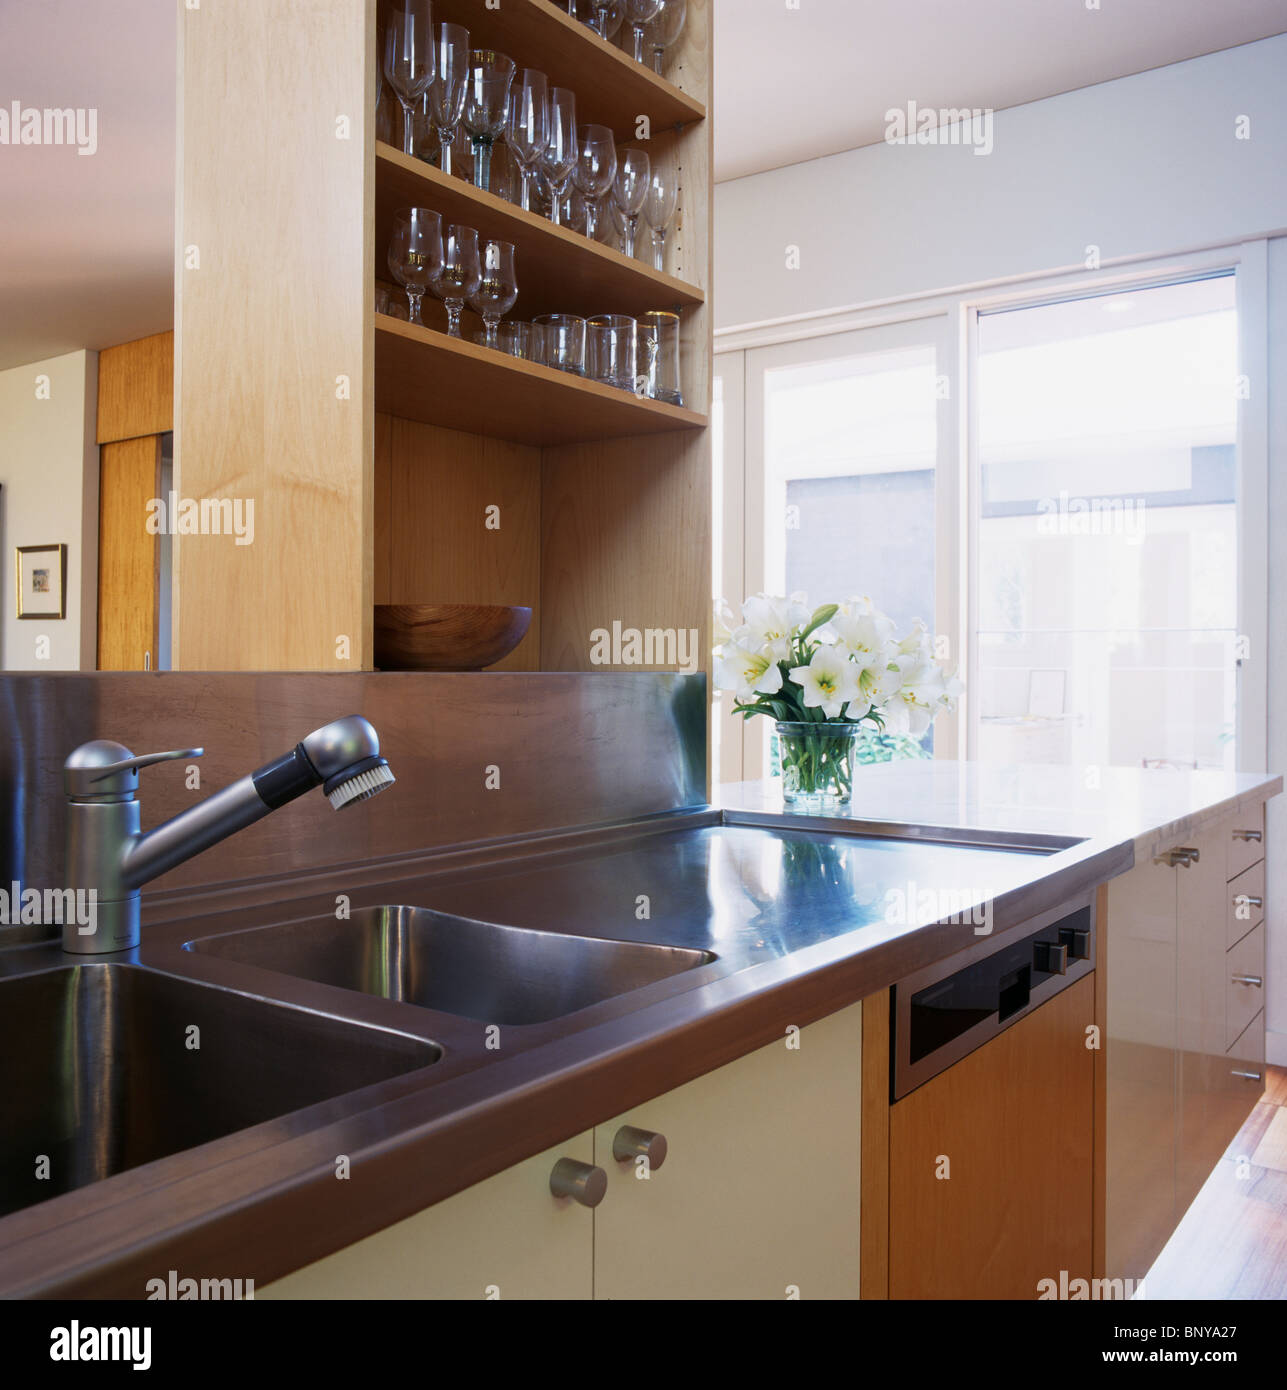 Wein-Gläser auf Regale über Edelstahl-Spüle und Arbeitsplatte in modernen Küche Stockfoto